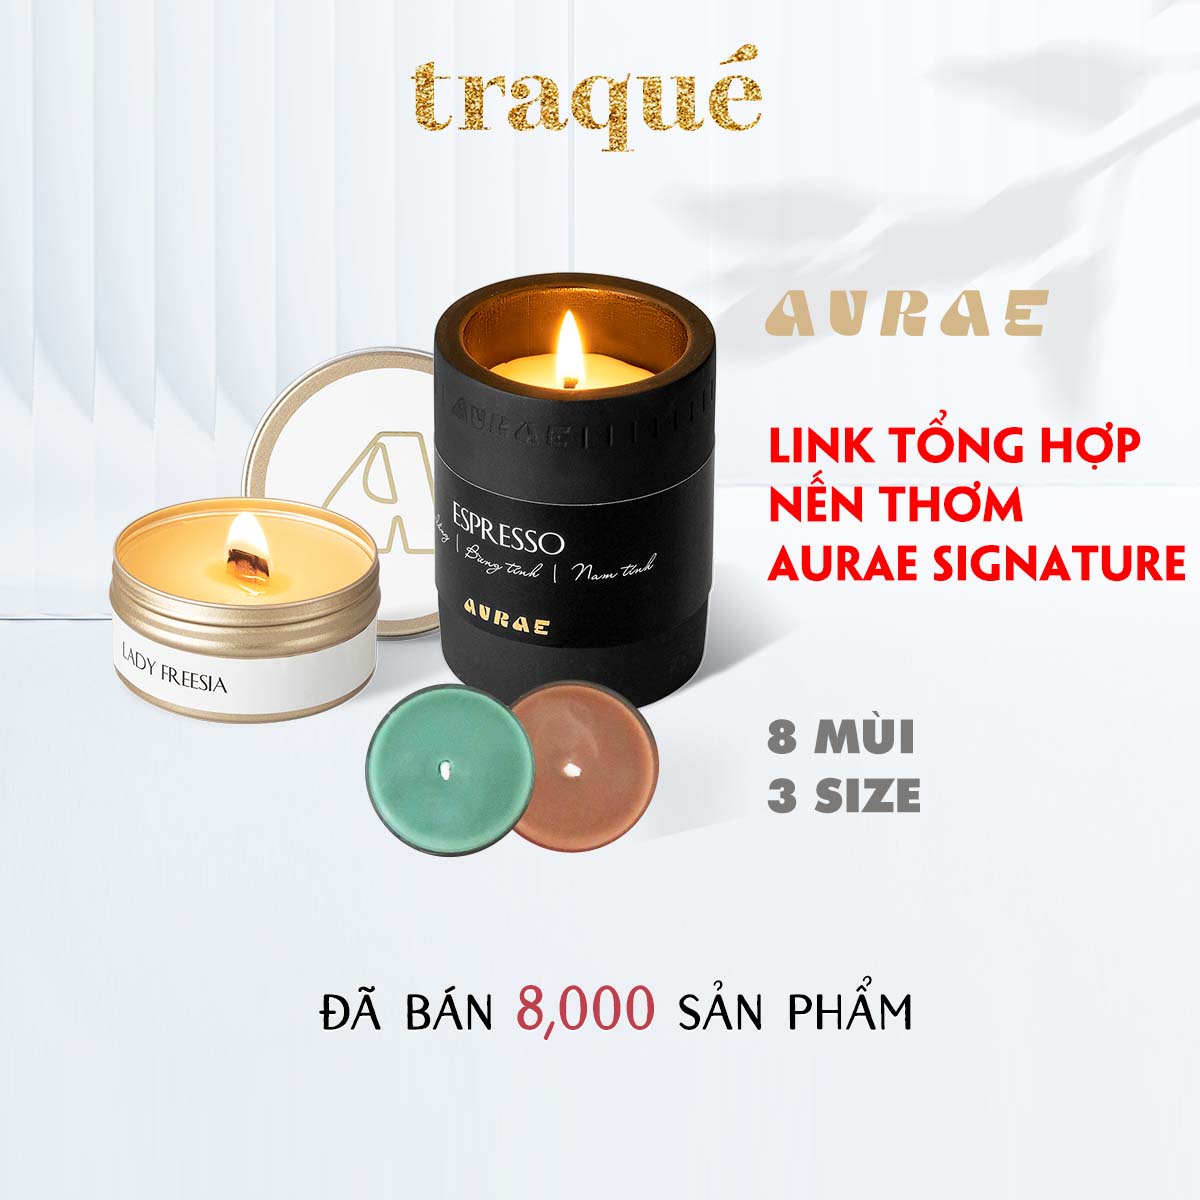 Nến thơm tinh dầu thảo mộc thiên nhiên thương hiệu Aurae - cho buổi tối lãng mạng, thư giãn.